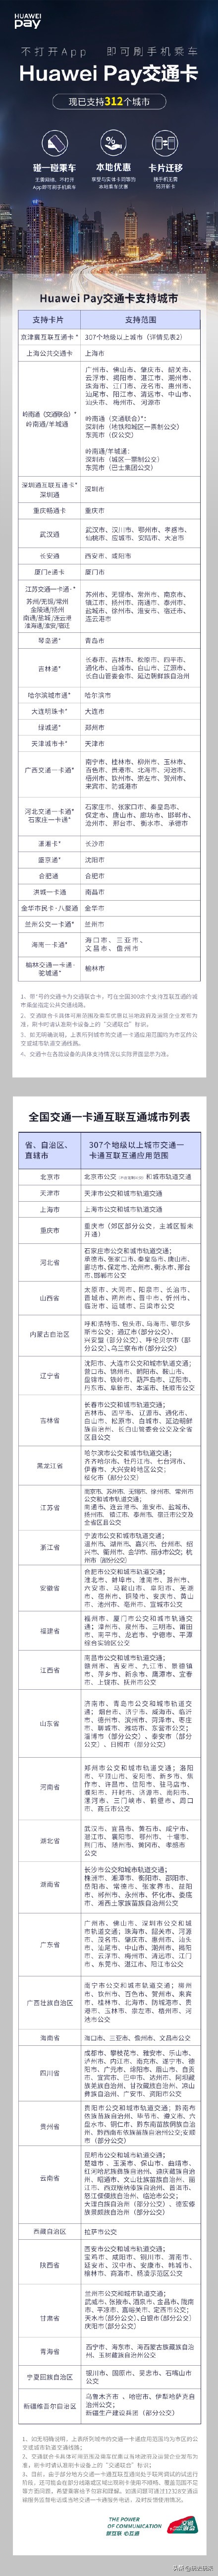 华为公司Huawei Pay新发布适用6个大城市公共交通卡